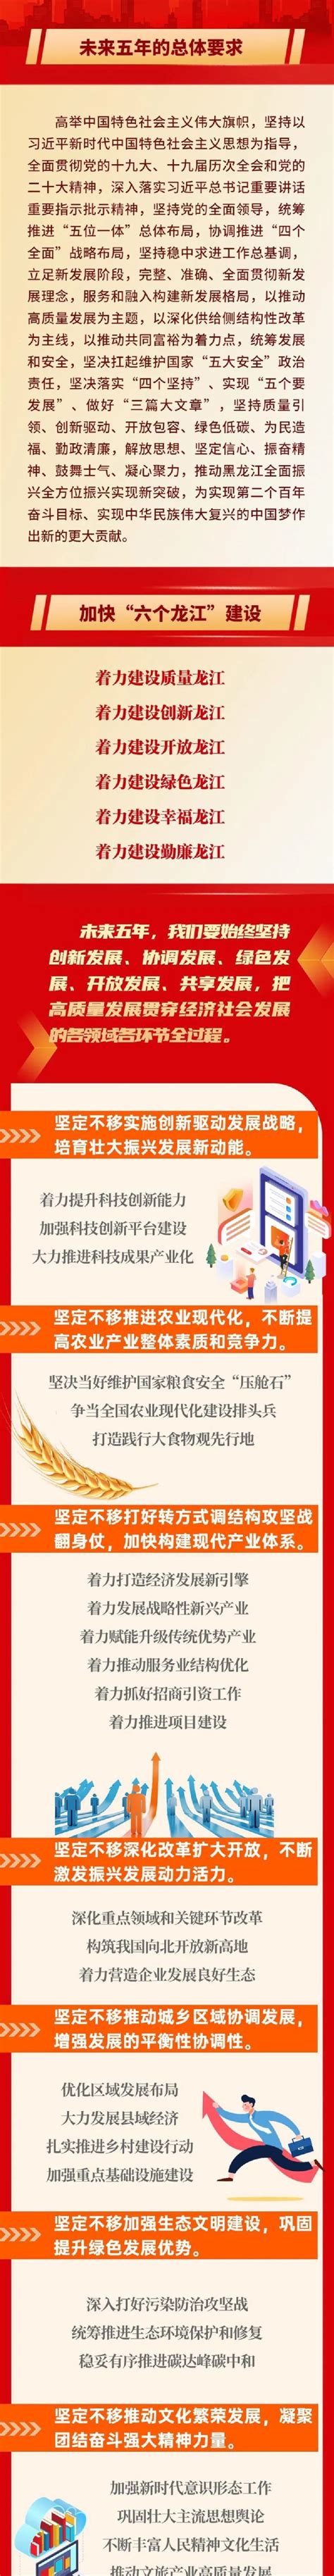 【时事政策】黑龙江省第十三次党代会报告